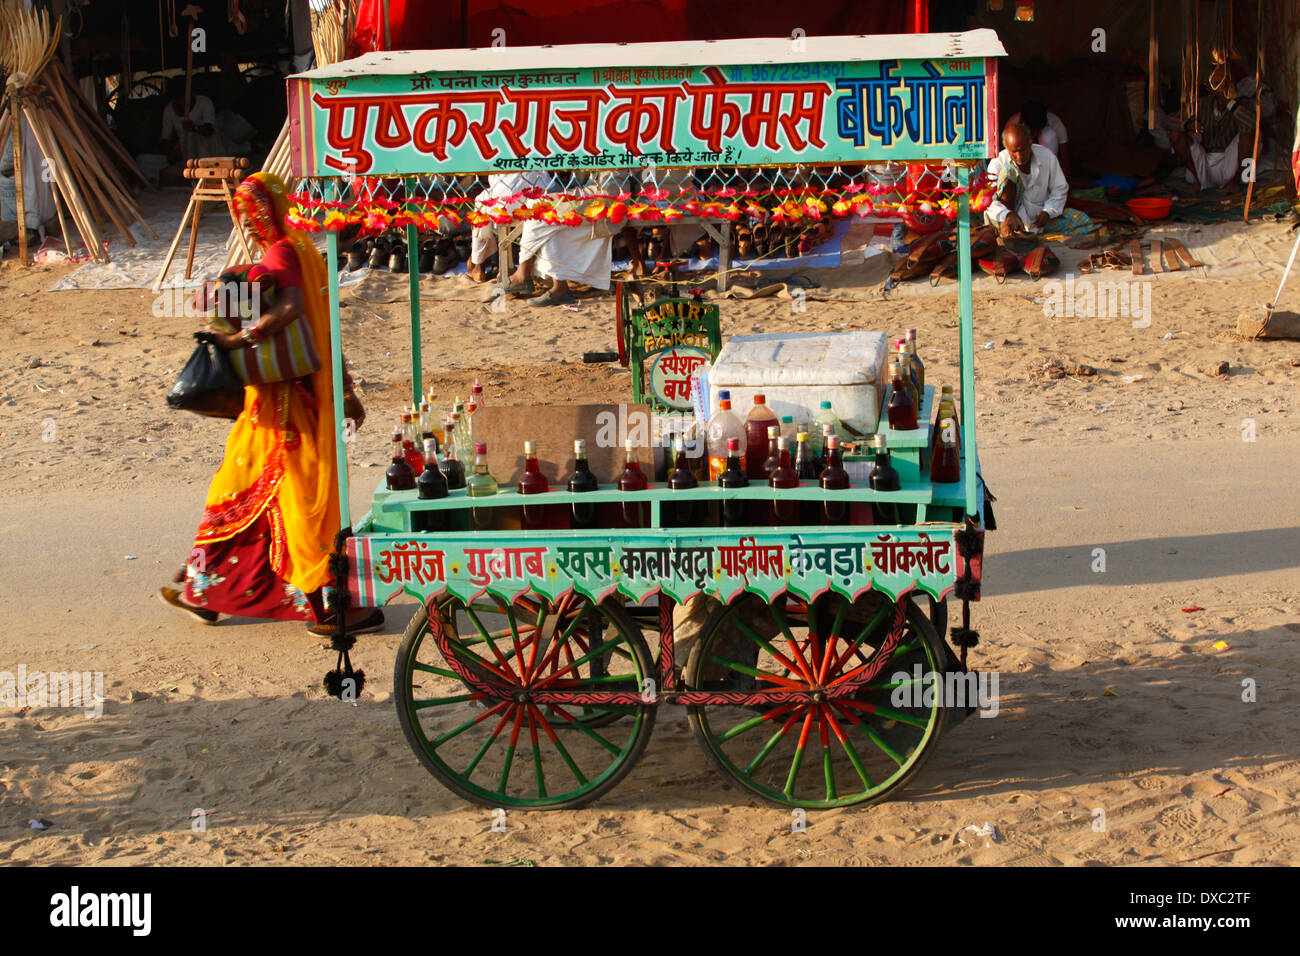 Boissons en vente dans une rue de Pushkar pendant le salon 'Chameau'. Le Rajasthan, Inde. Banque D'Images